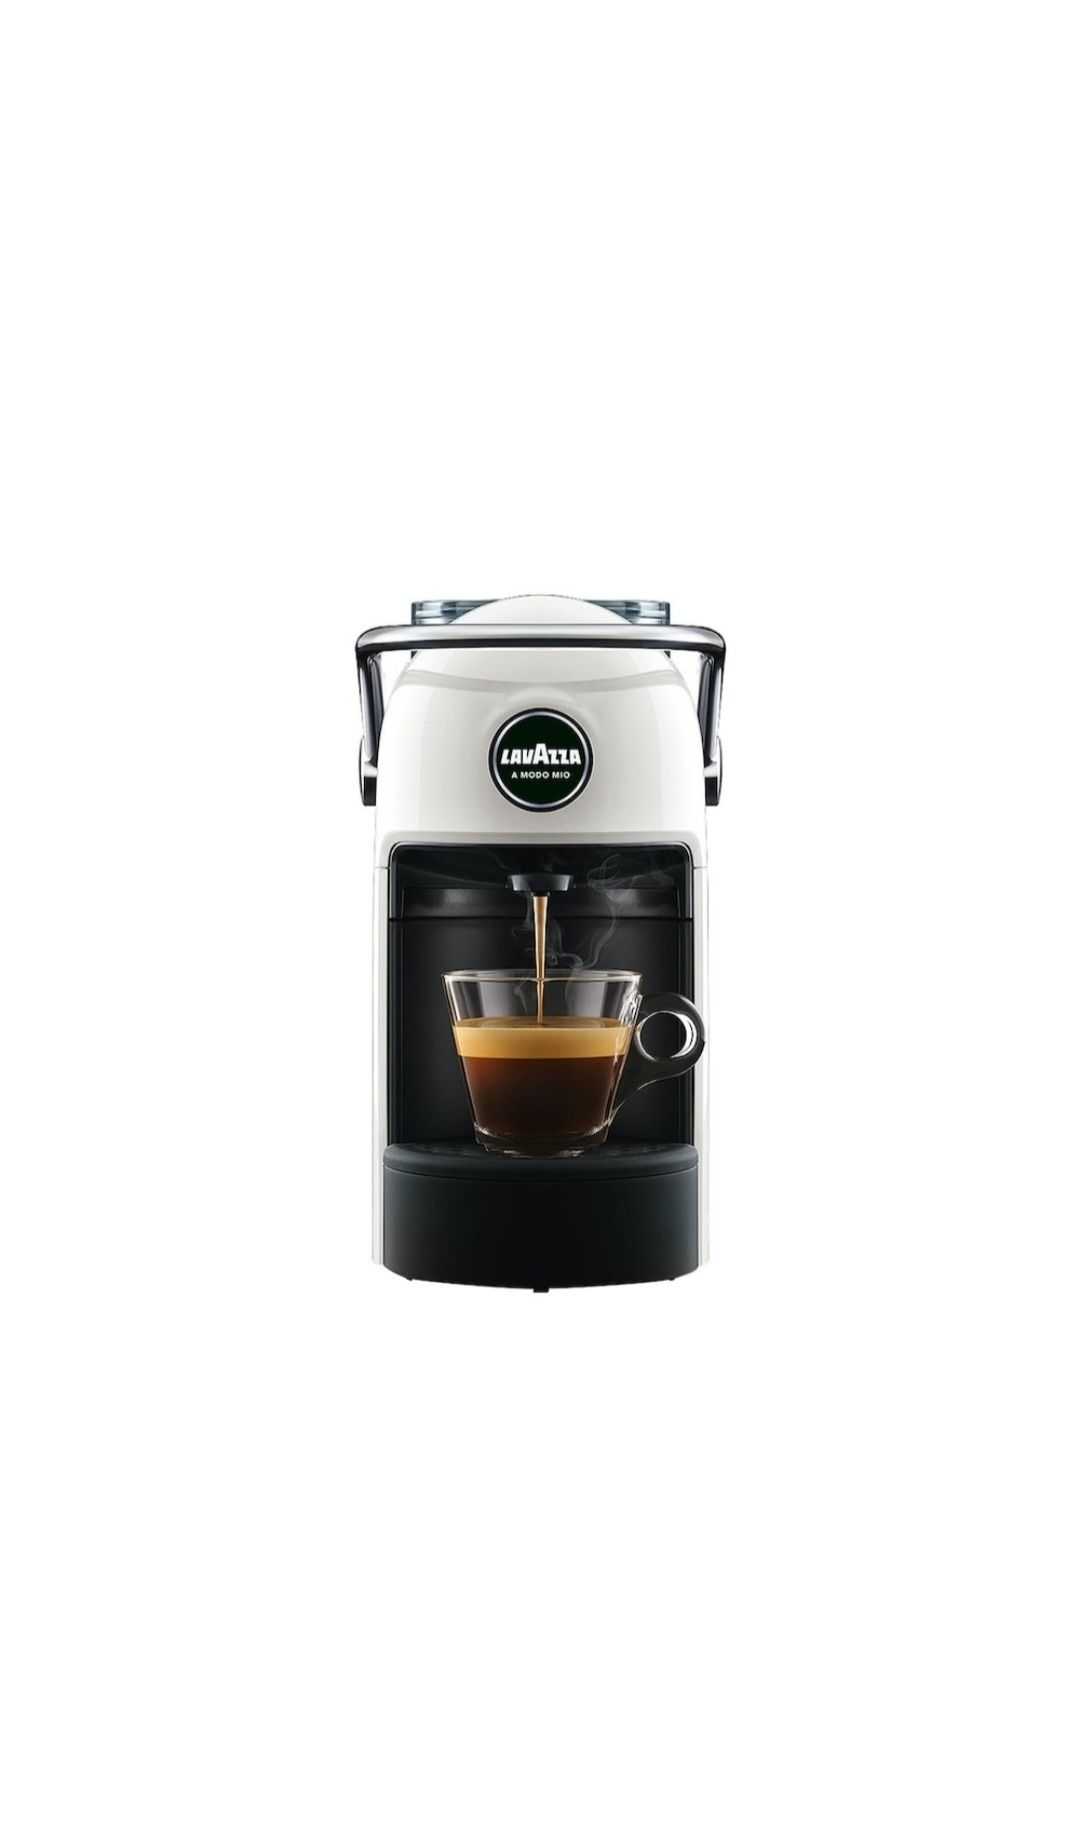 Espressor cafea Lavazza Jolie Alb, A Modo Mio, 15 bari, Putere 1260w